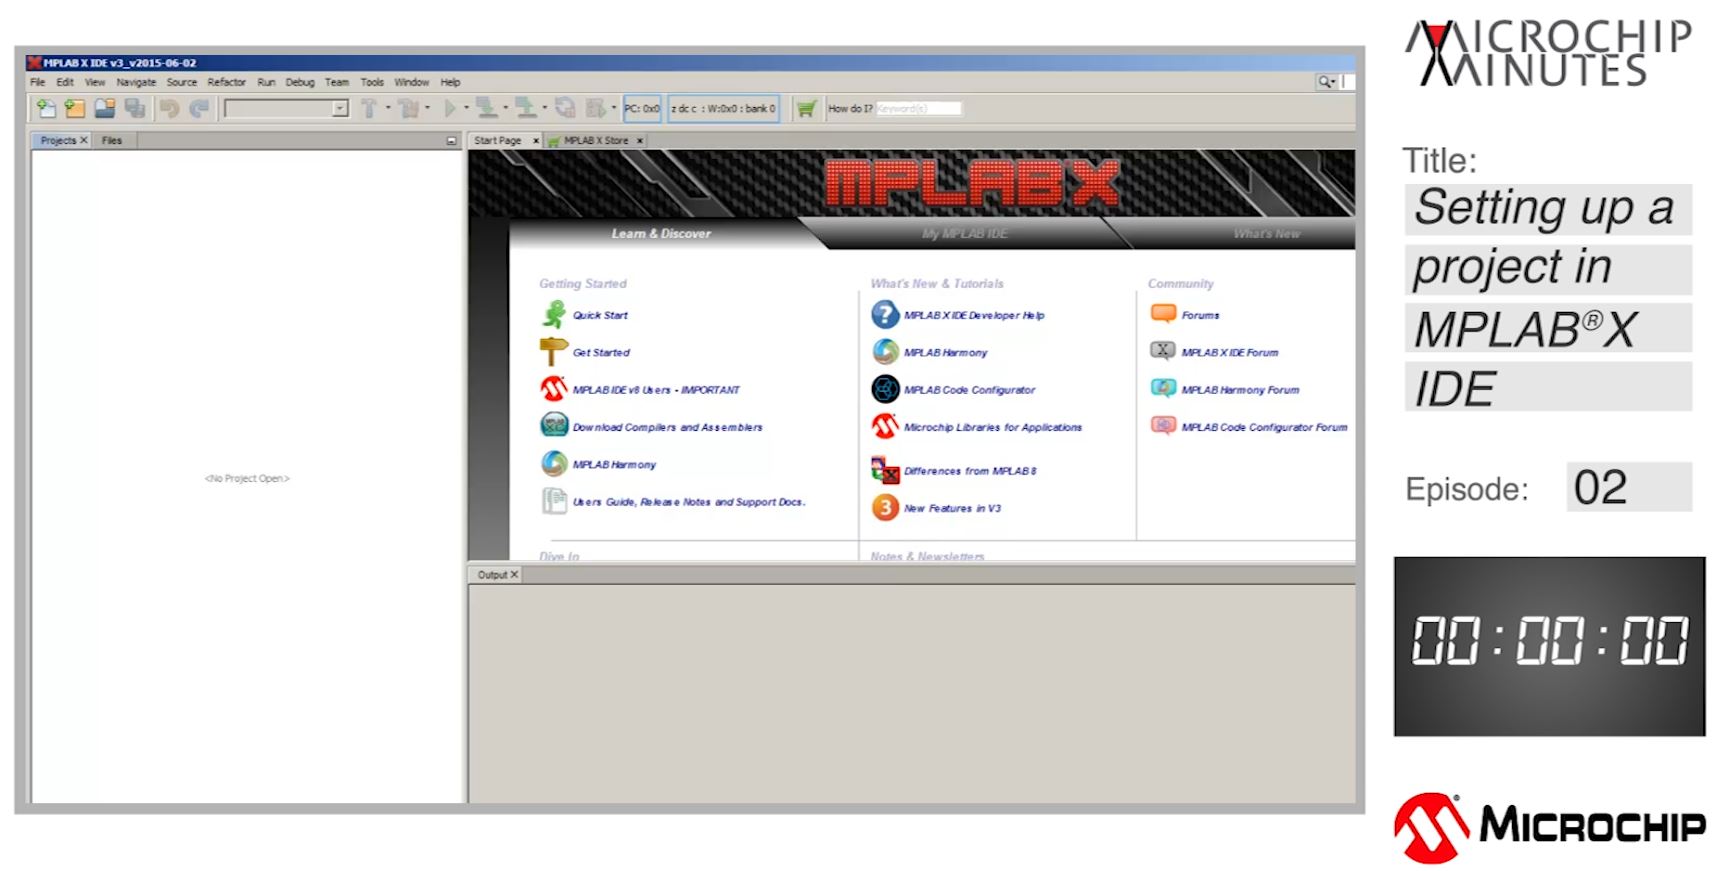 MICROCHIP MINUTES 2 - 在MPLAB® X IDE中设置项目